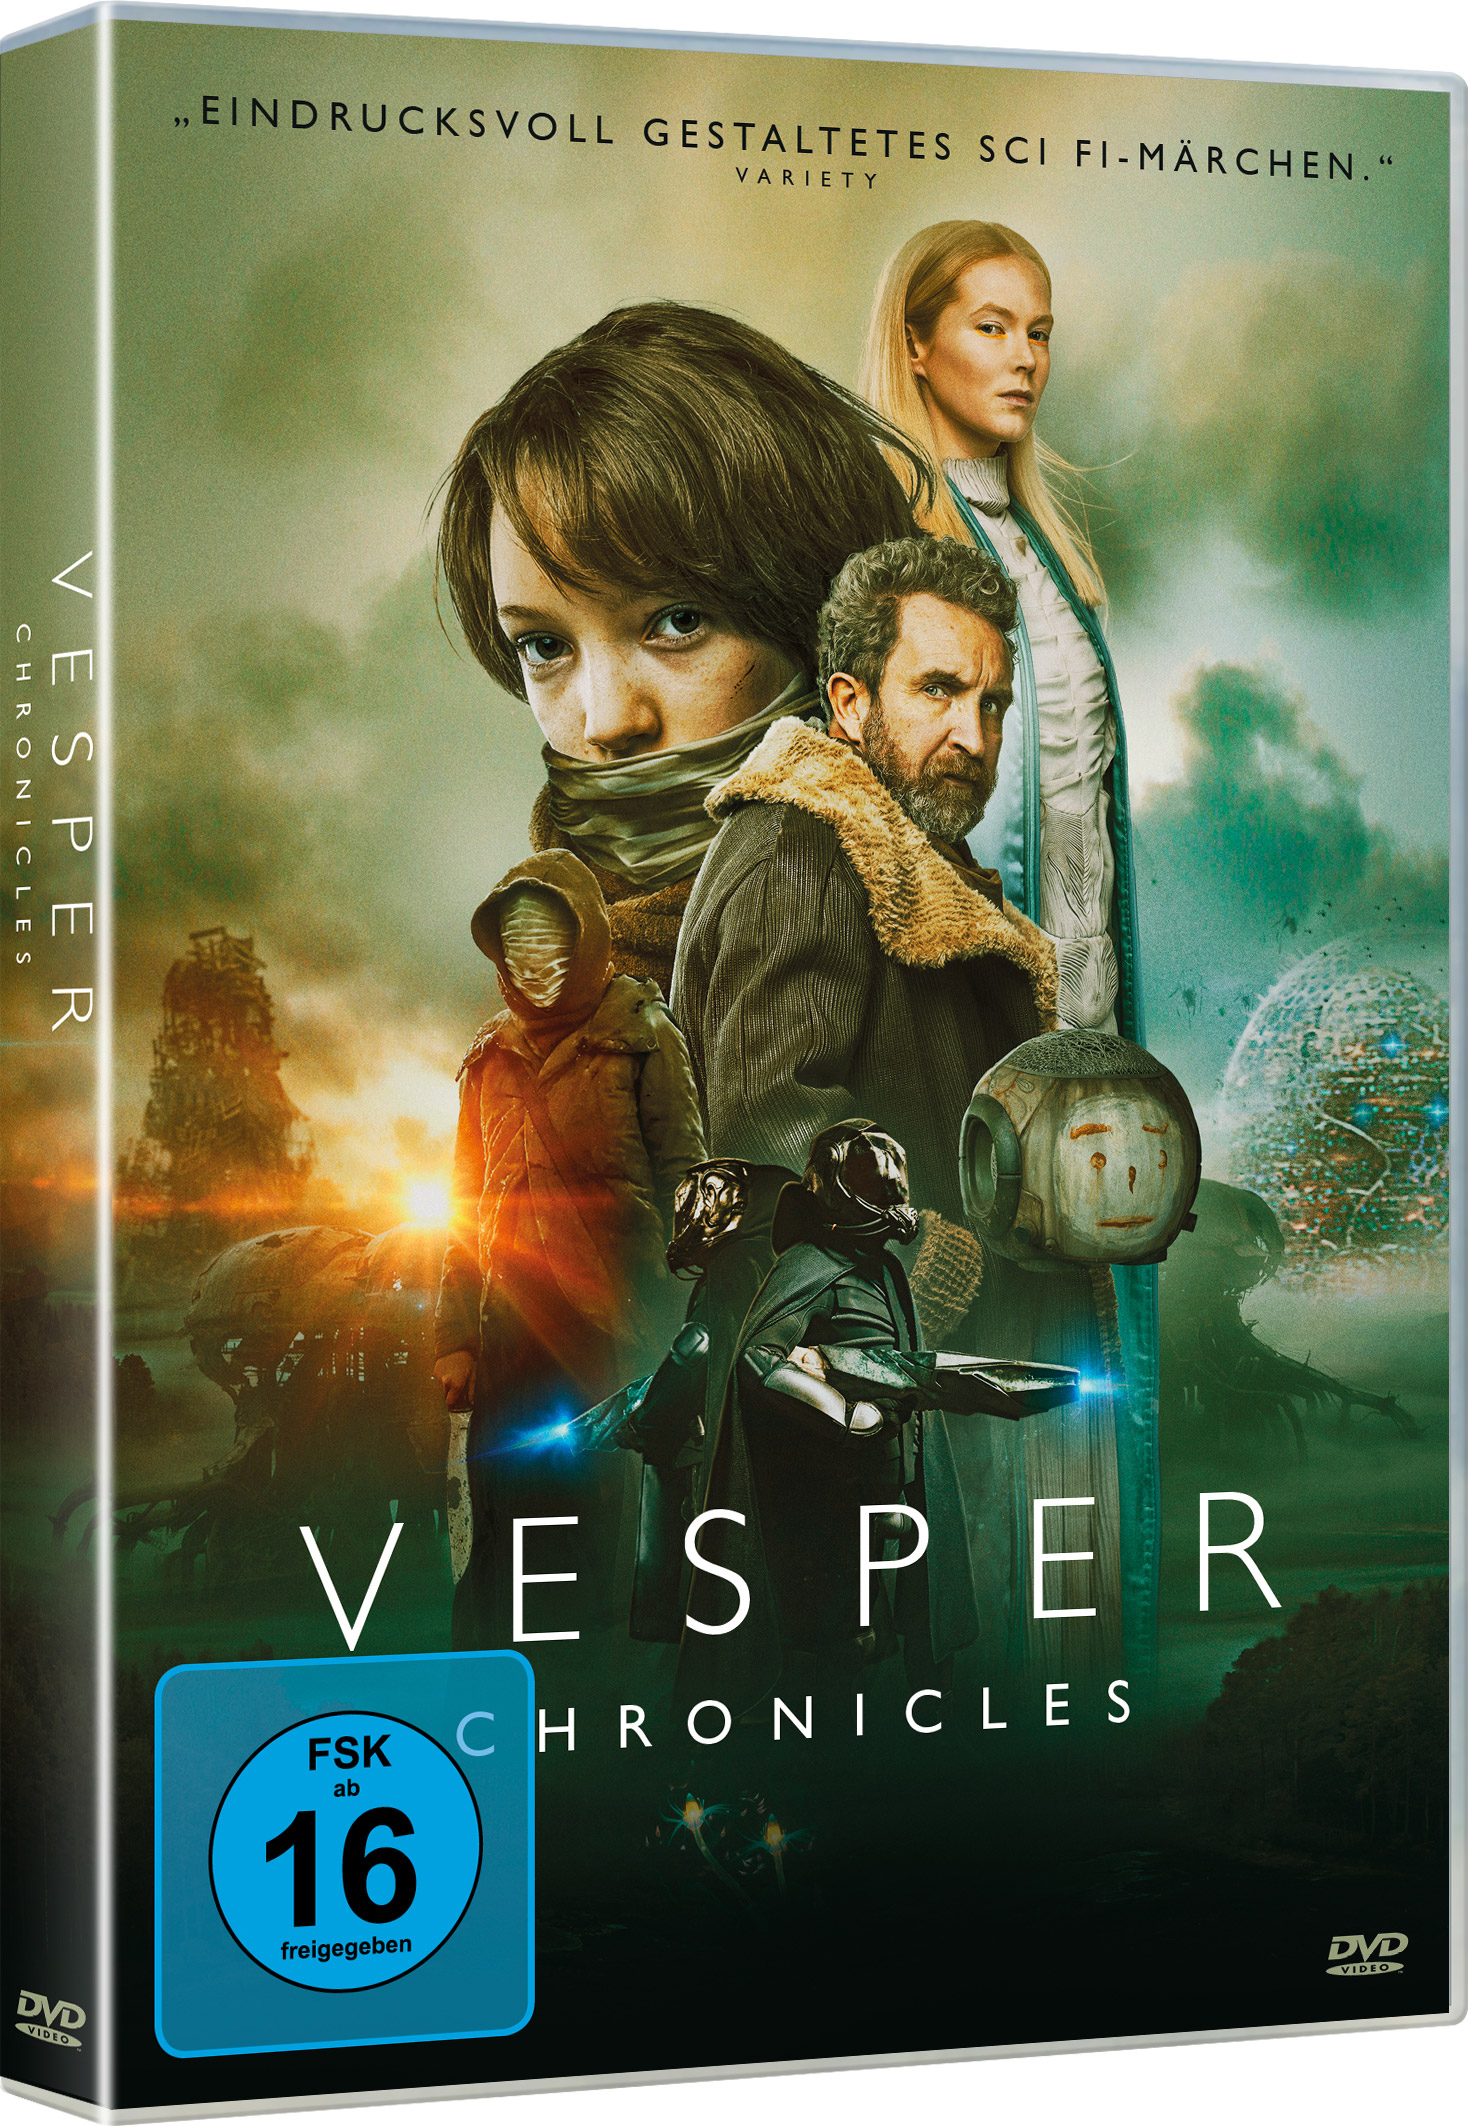 Vesper Chronicles (DVD)  Image 2